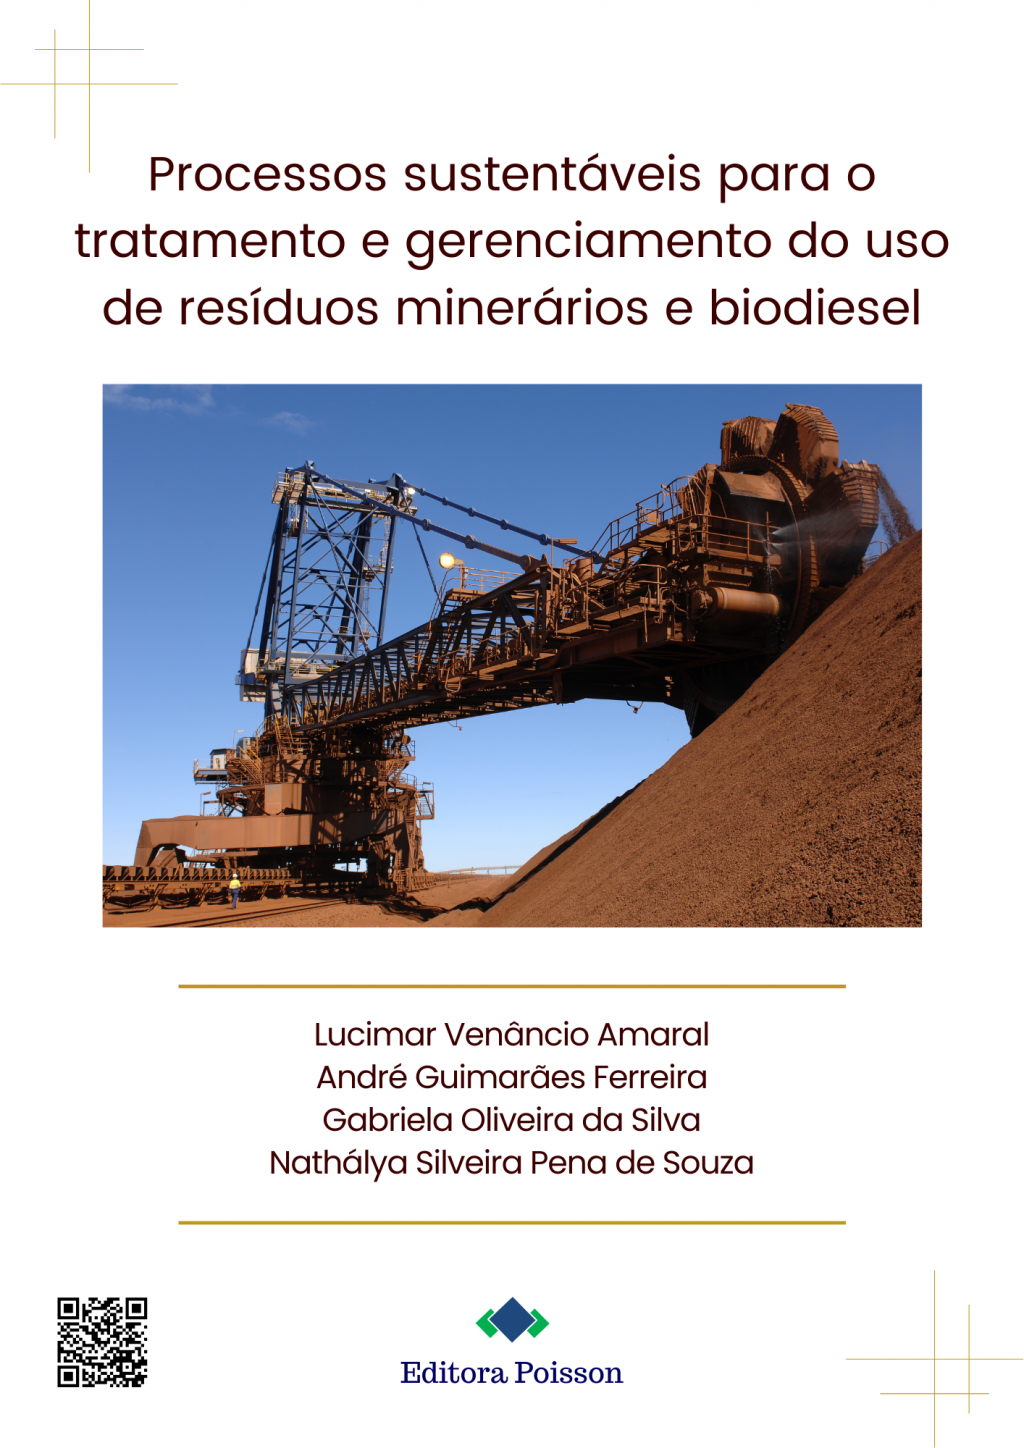 Processos sustentáveis para o tratamento e gerenciamento do uso de resíduos minerários e biodiesel